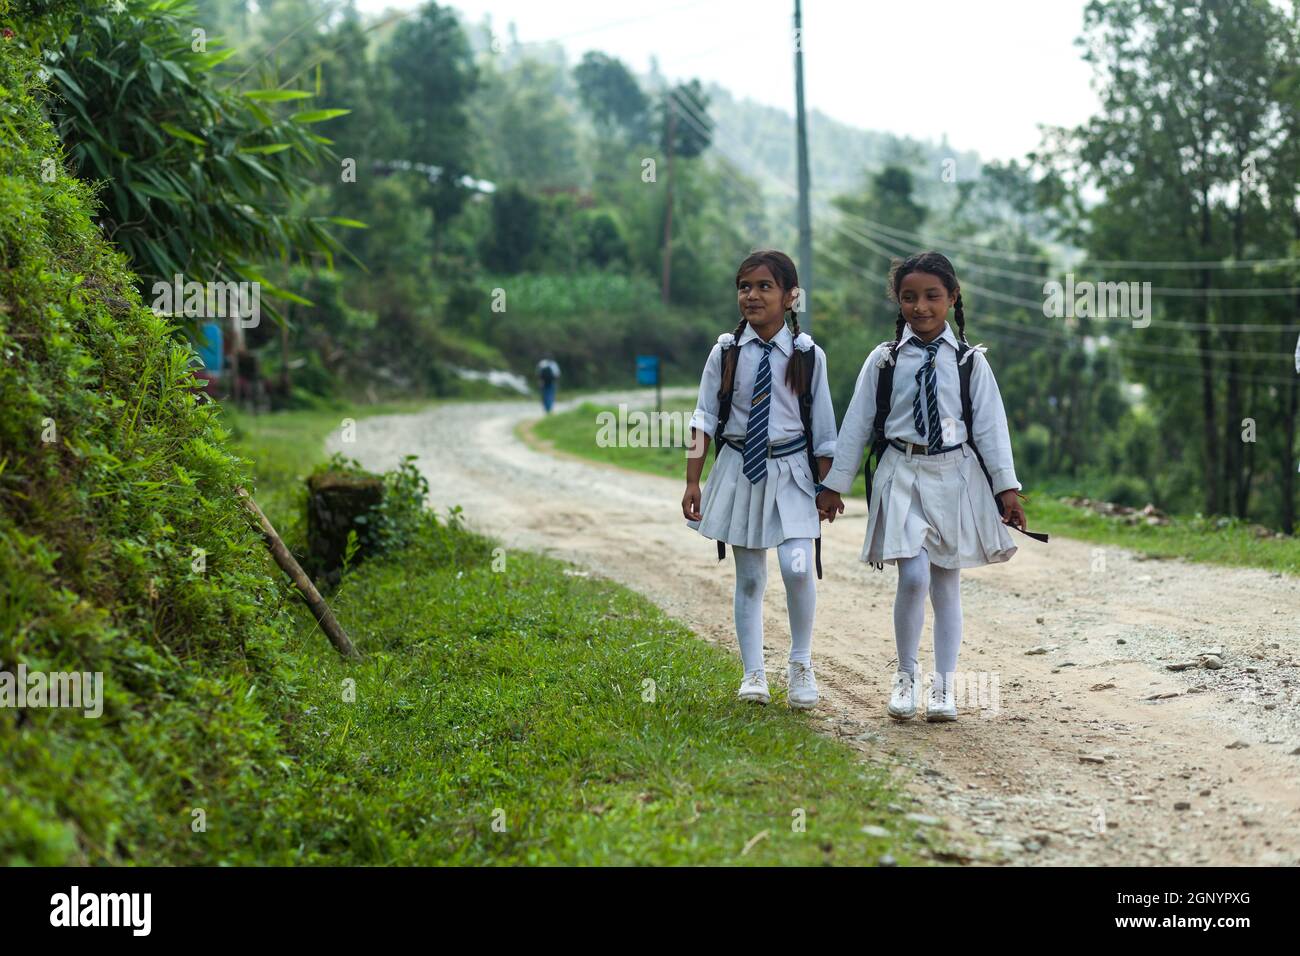 POKHARA, NEPAL - 31 MAGGIO 2016: Le ragazze scolastiche vanno a casa dalla scuola il 31 maggio 2016 a Pokhara, Nepal Foto Stock